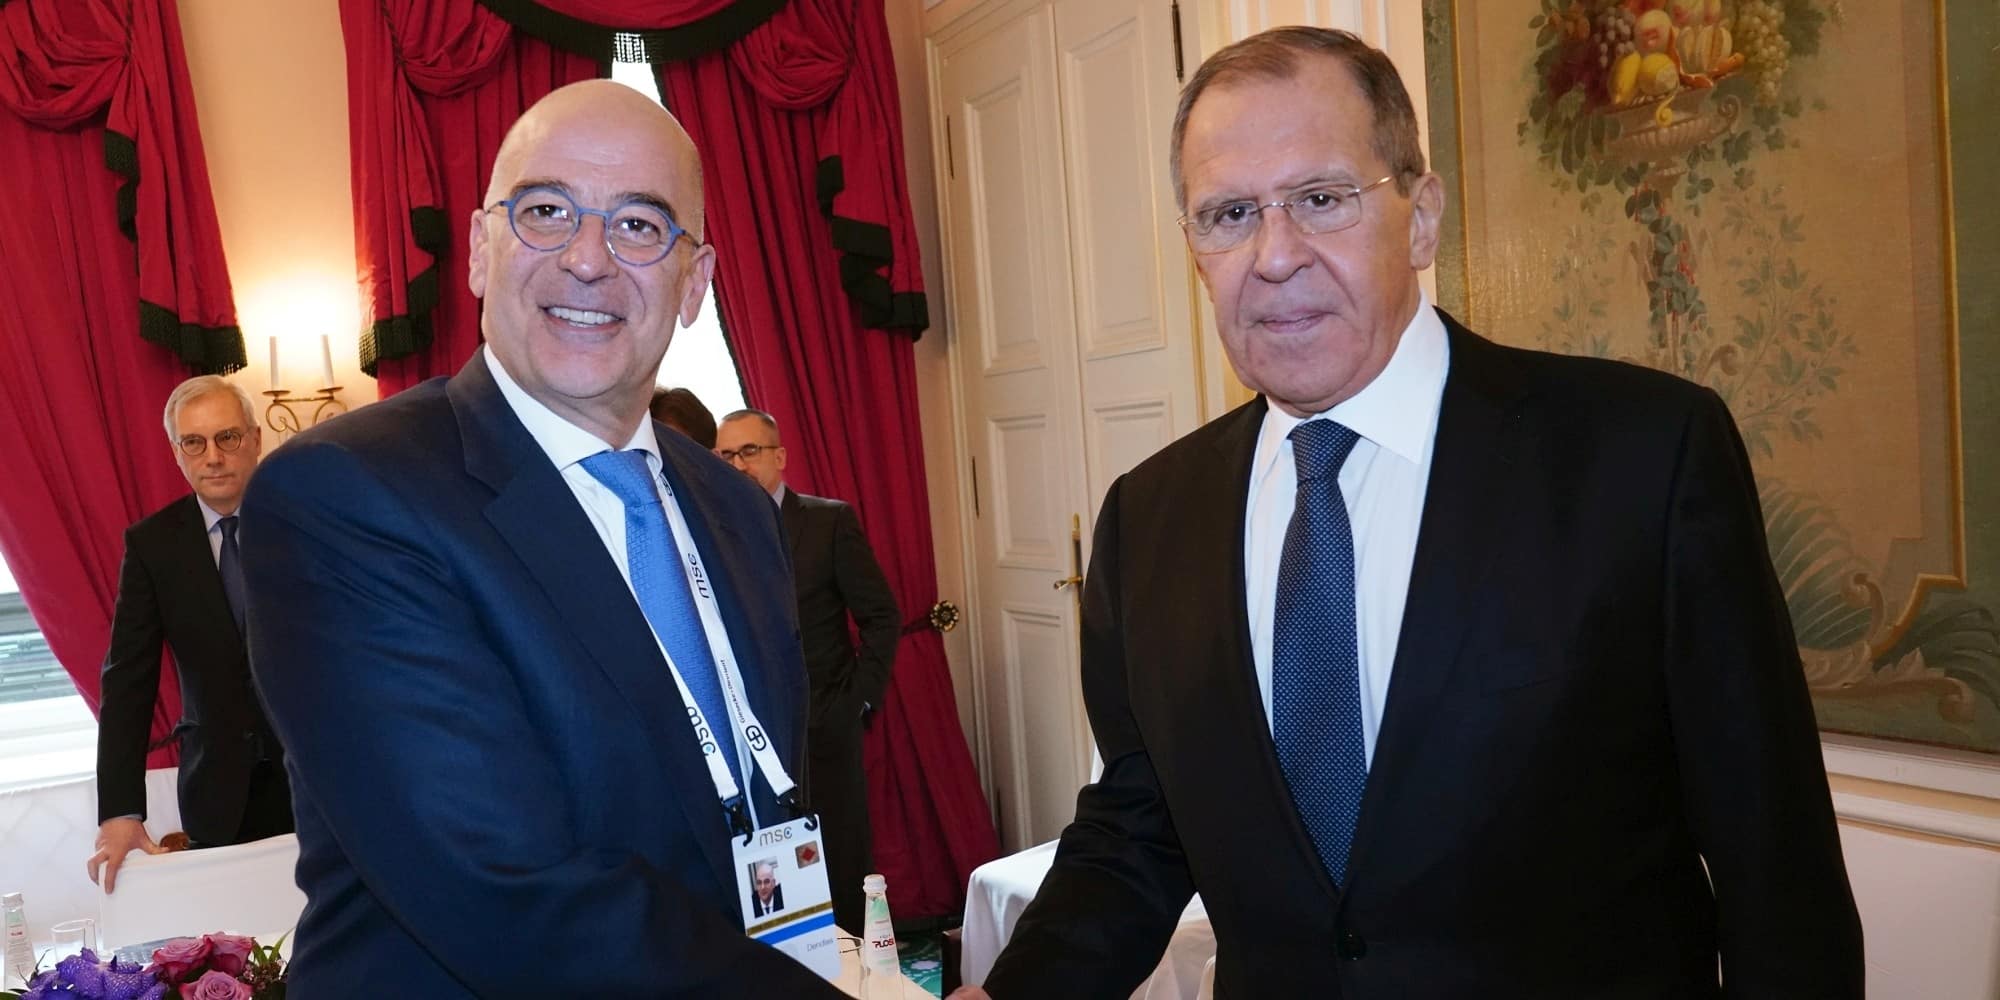 Ο υπουργός Εξωτερικών Νίκος Δένδιας ανταλλάσει χειραψία με τον υπουργό Εξωτερικών της Ρωσίας, Σεργκέι Λαβρόφ